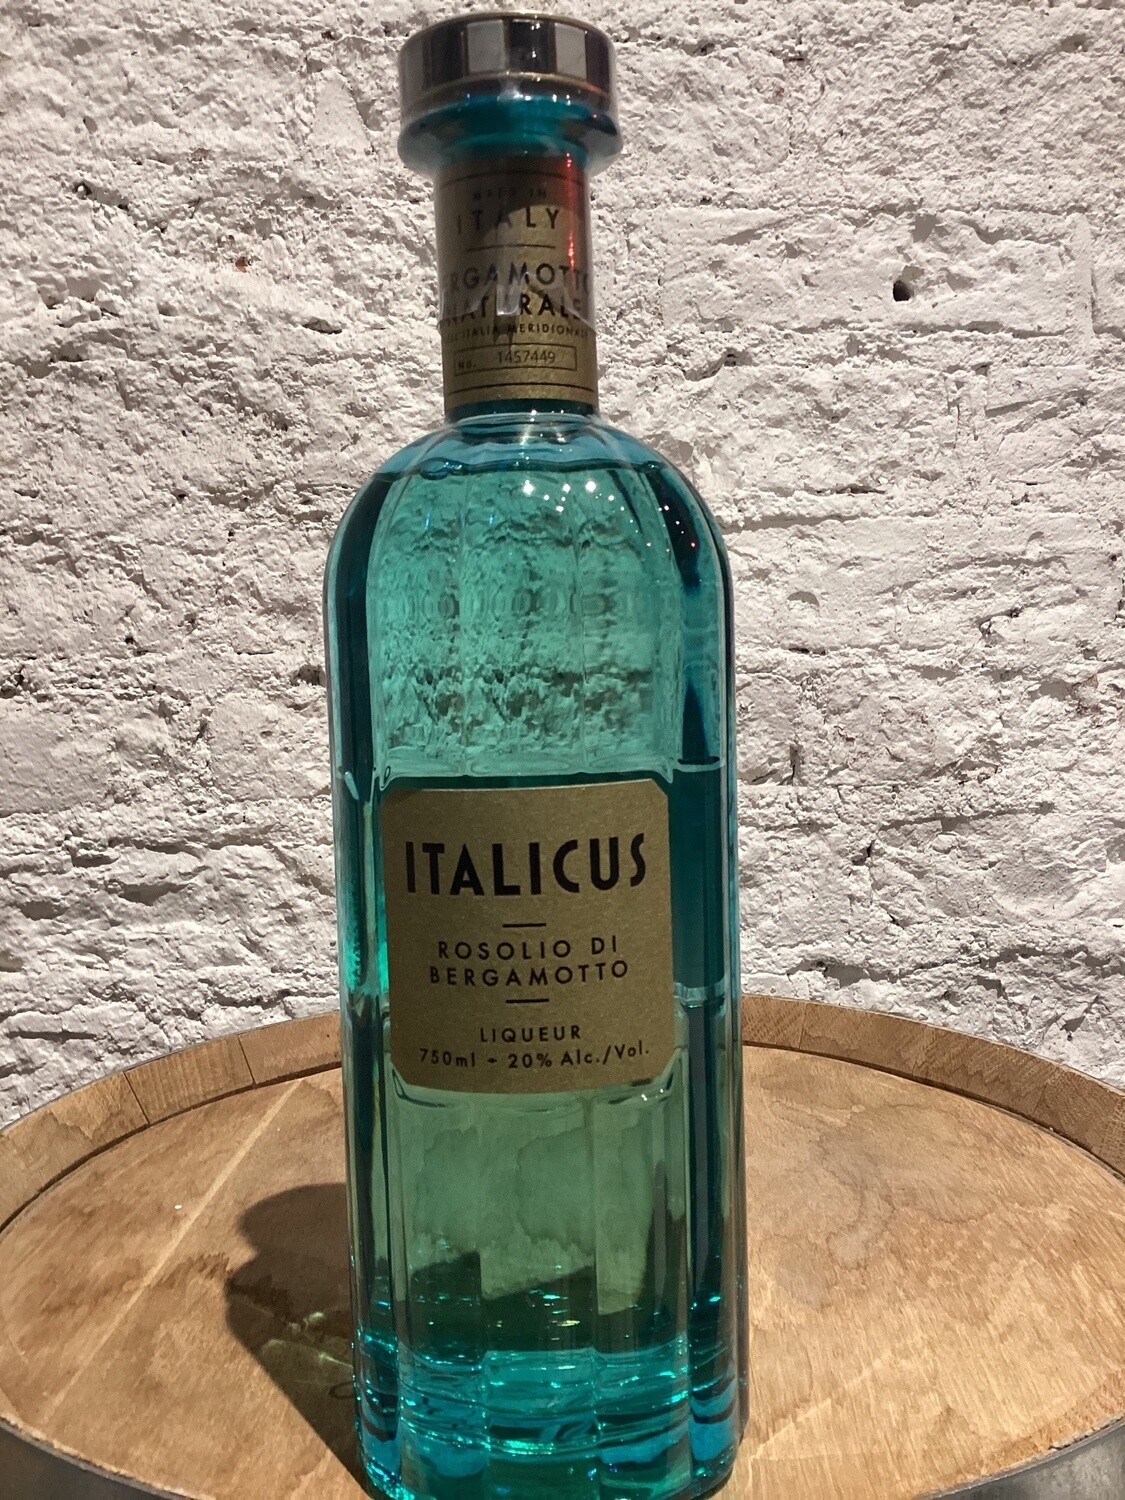 Italicus Rosolio di Bergamotto Liqueur Italy (750ml), Size: 750ml